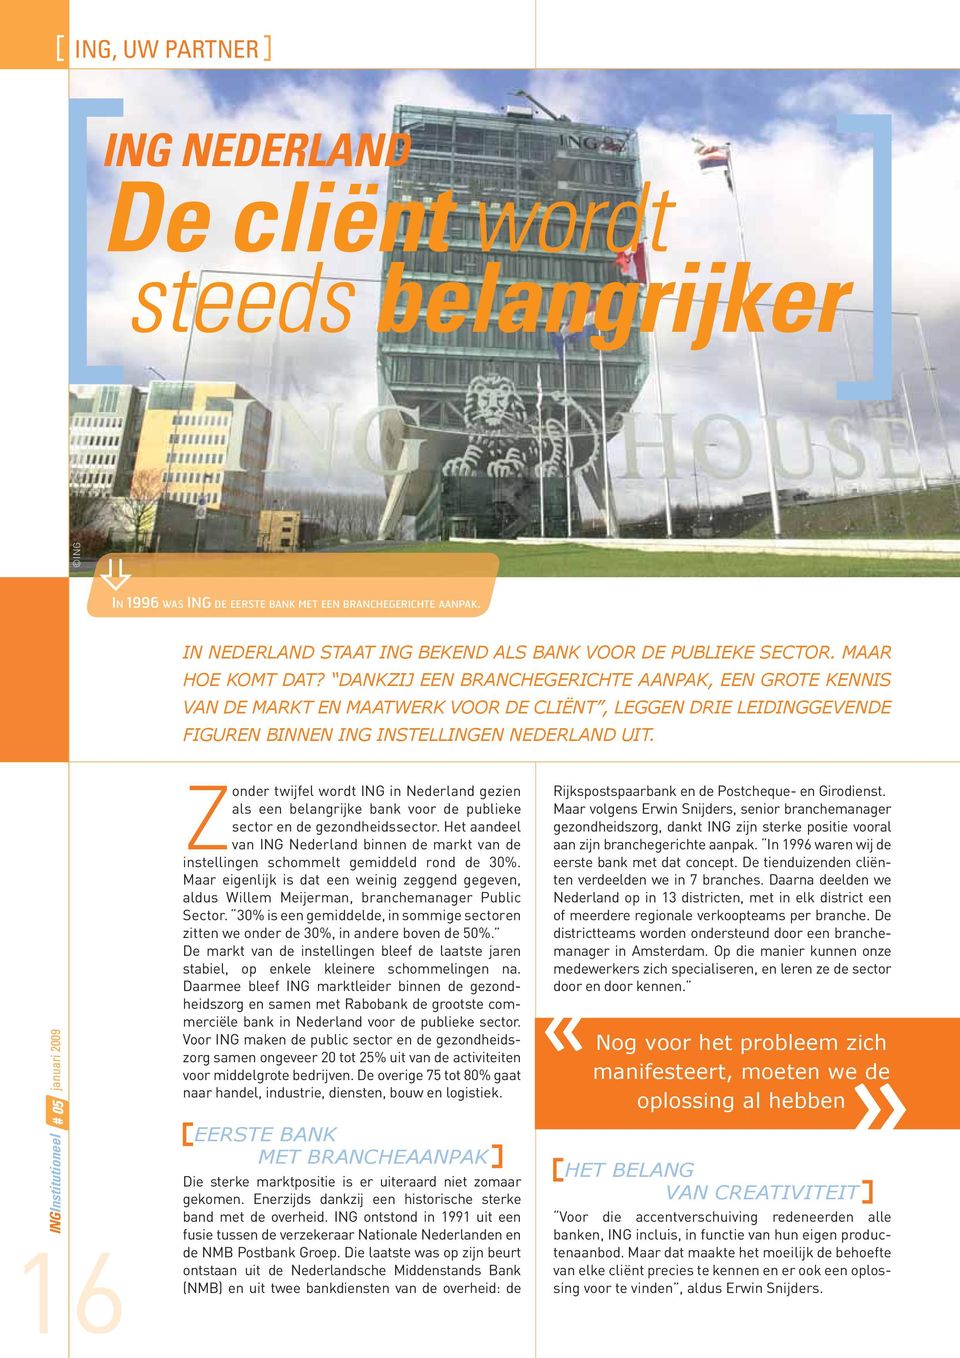 16 Zonder twijfel wordt ING in Nederland gezien als een belangrijke bank voor de publieke sector en de gezondheidssector.